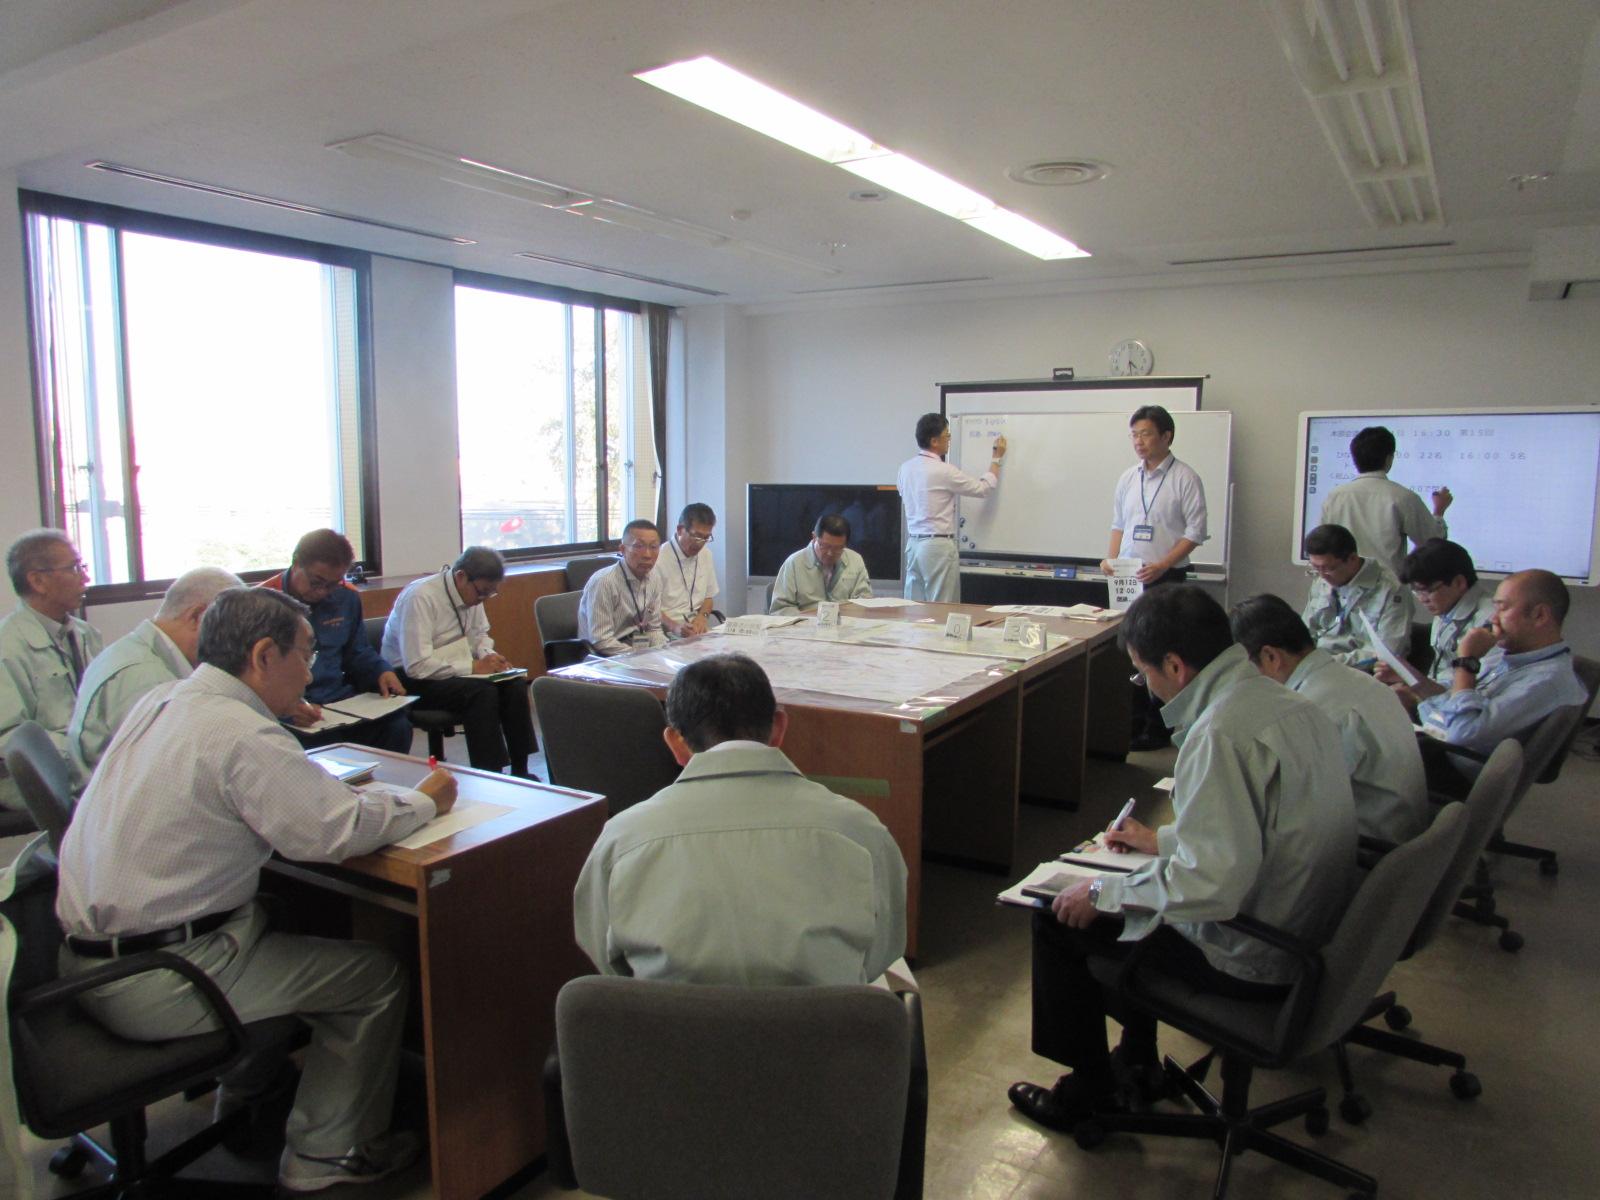 北海道胆振東部地震に伴いホワイトボードを使って災害の対応を話し合っている写真1